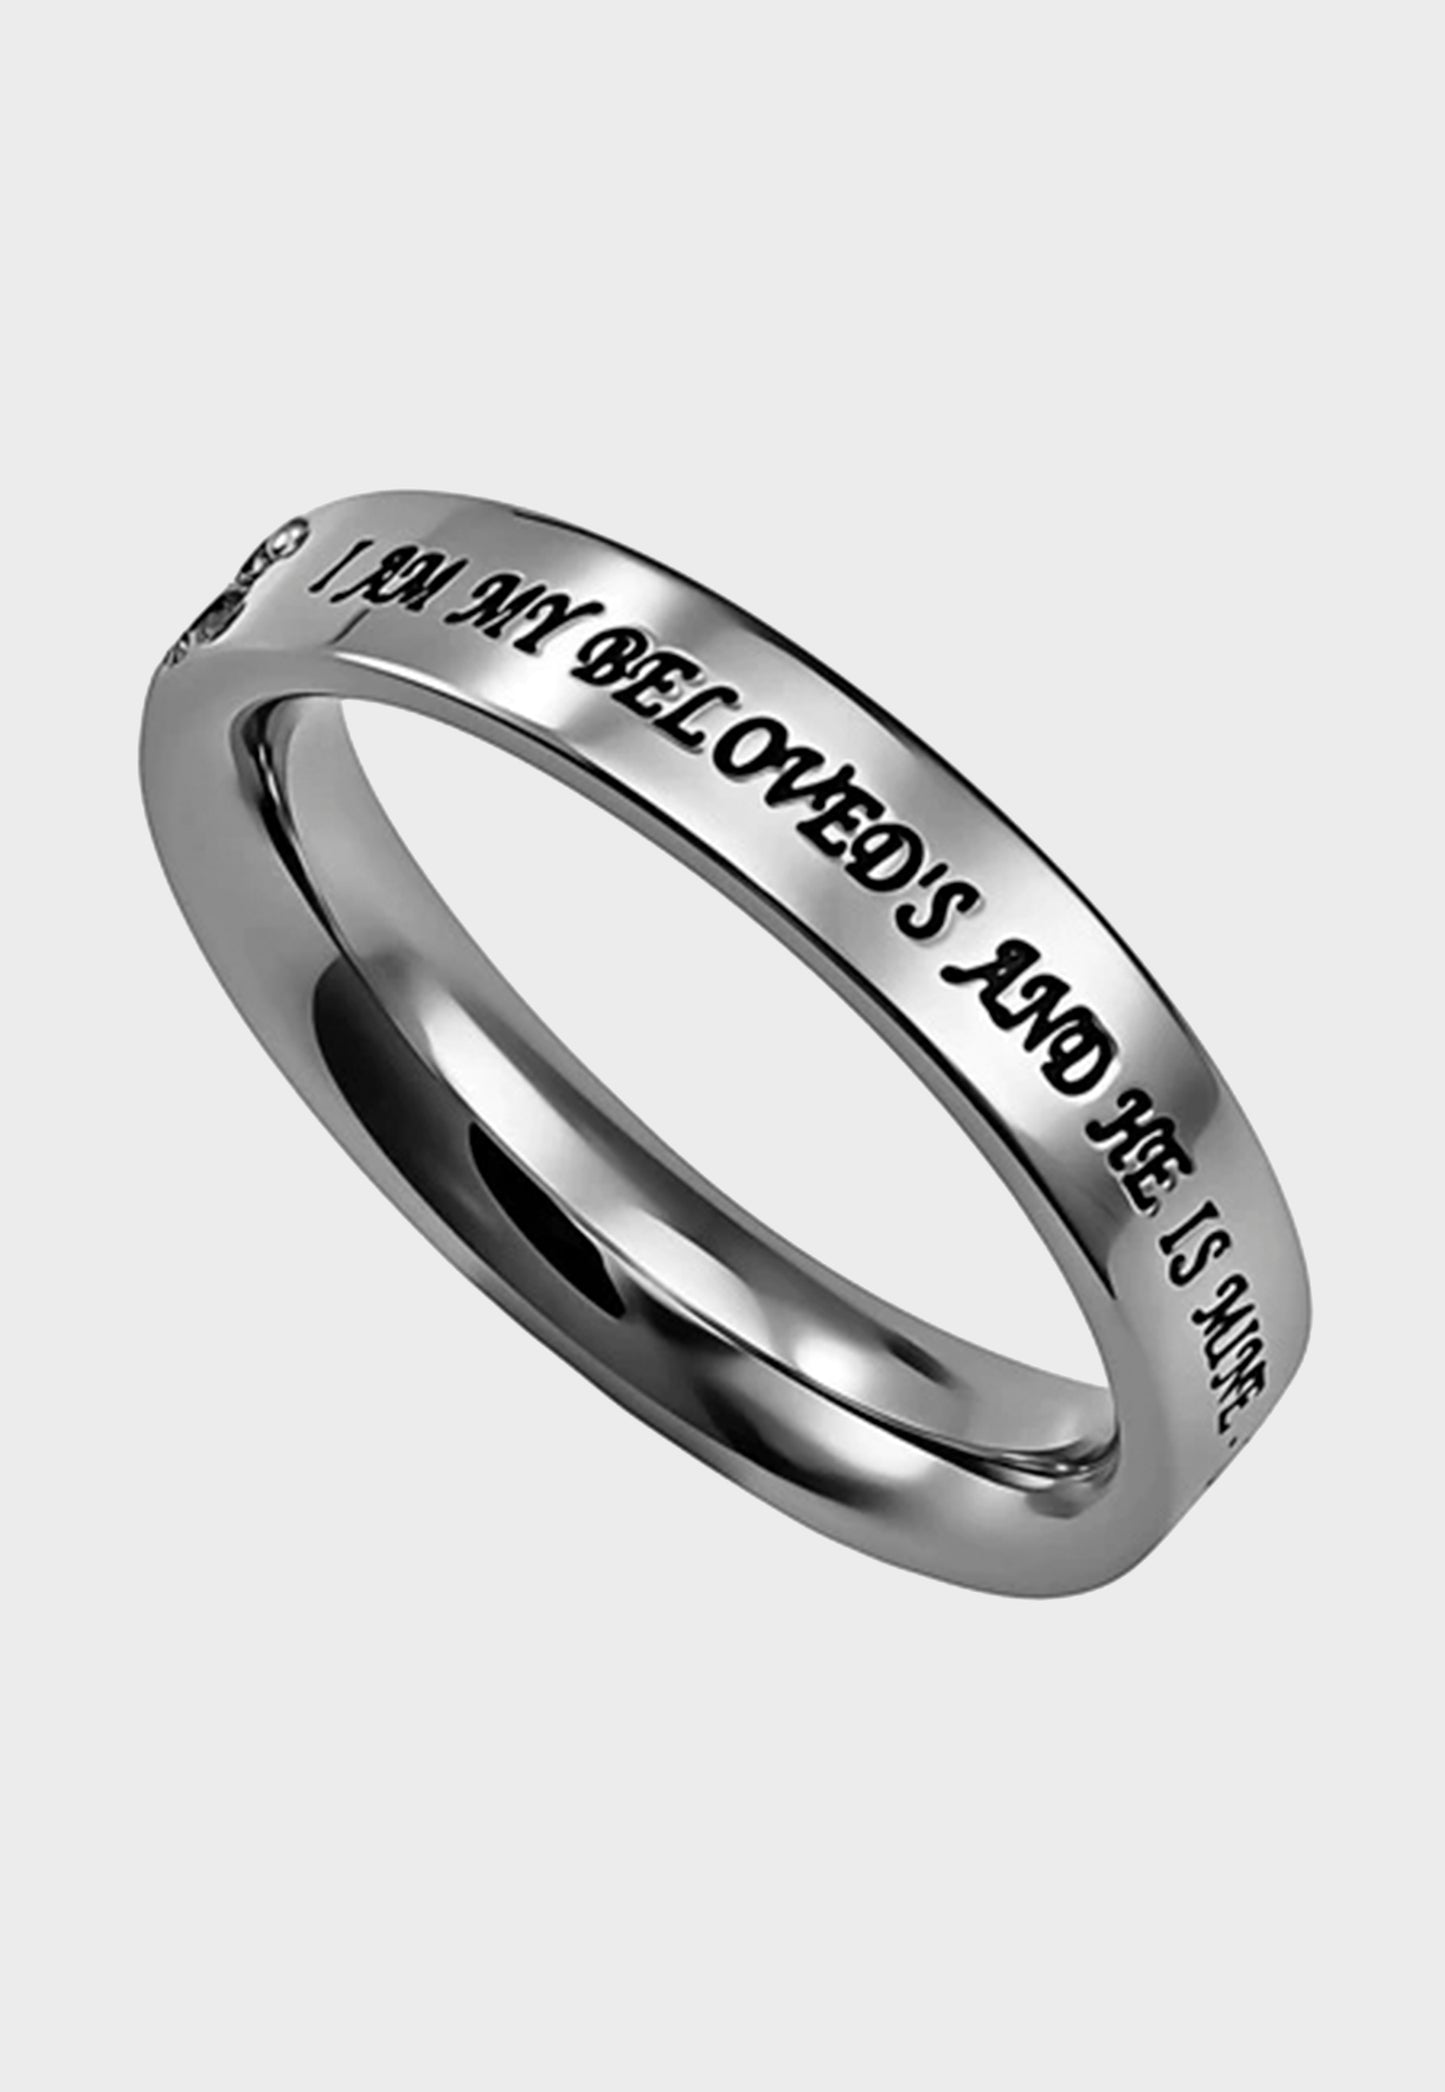 Christian ring for women